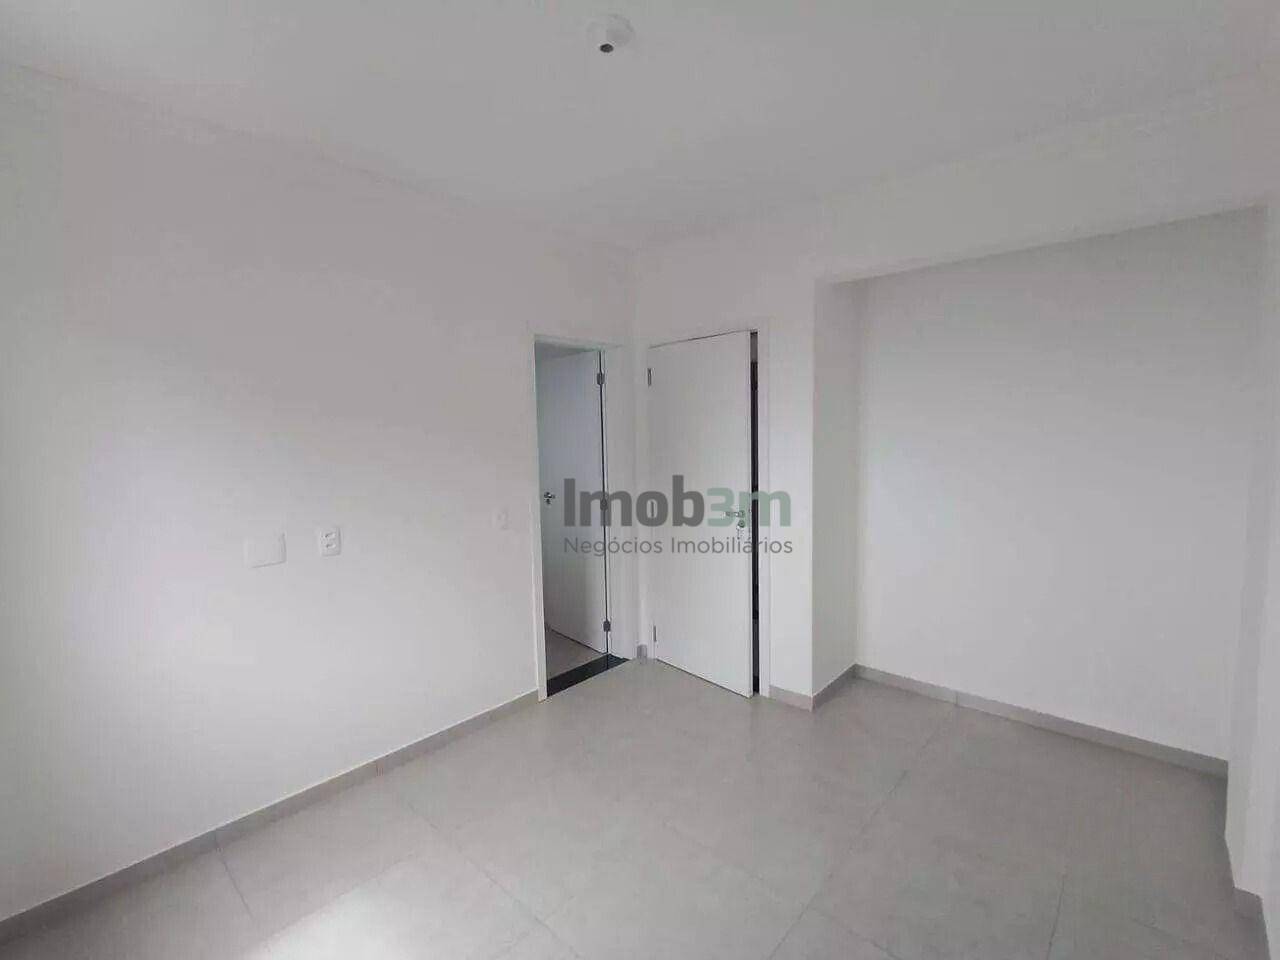 Apartamento, 2 quartos, 74 m² - Foto 2